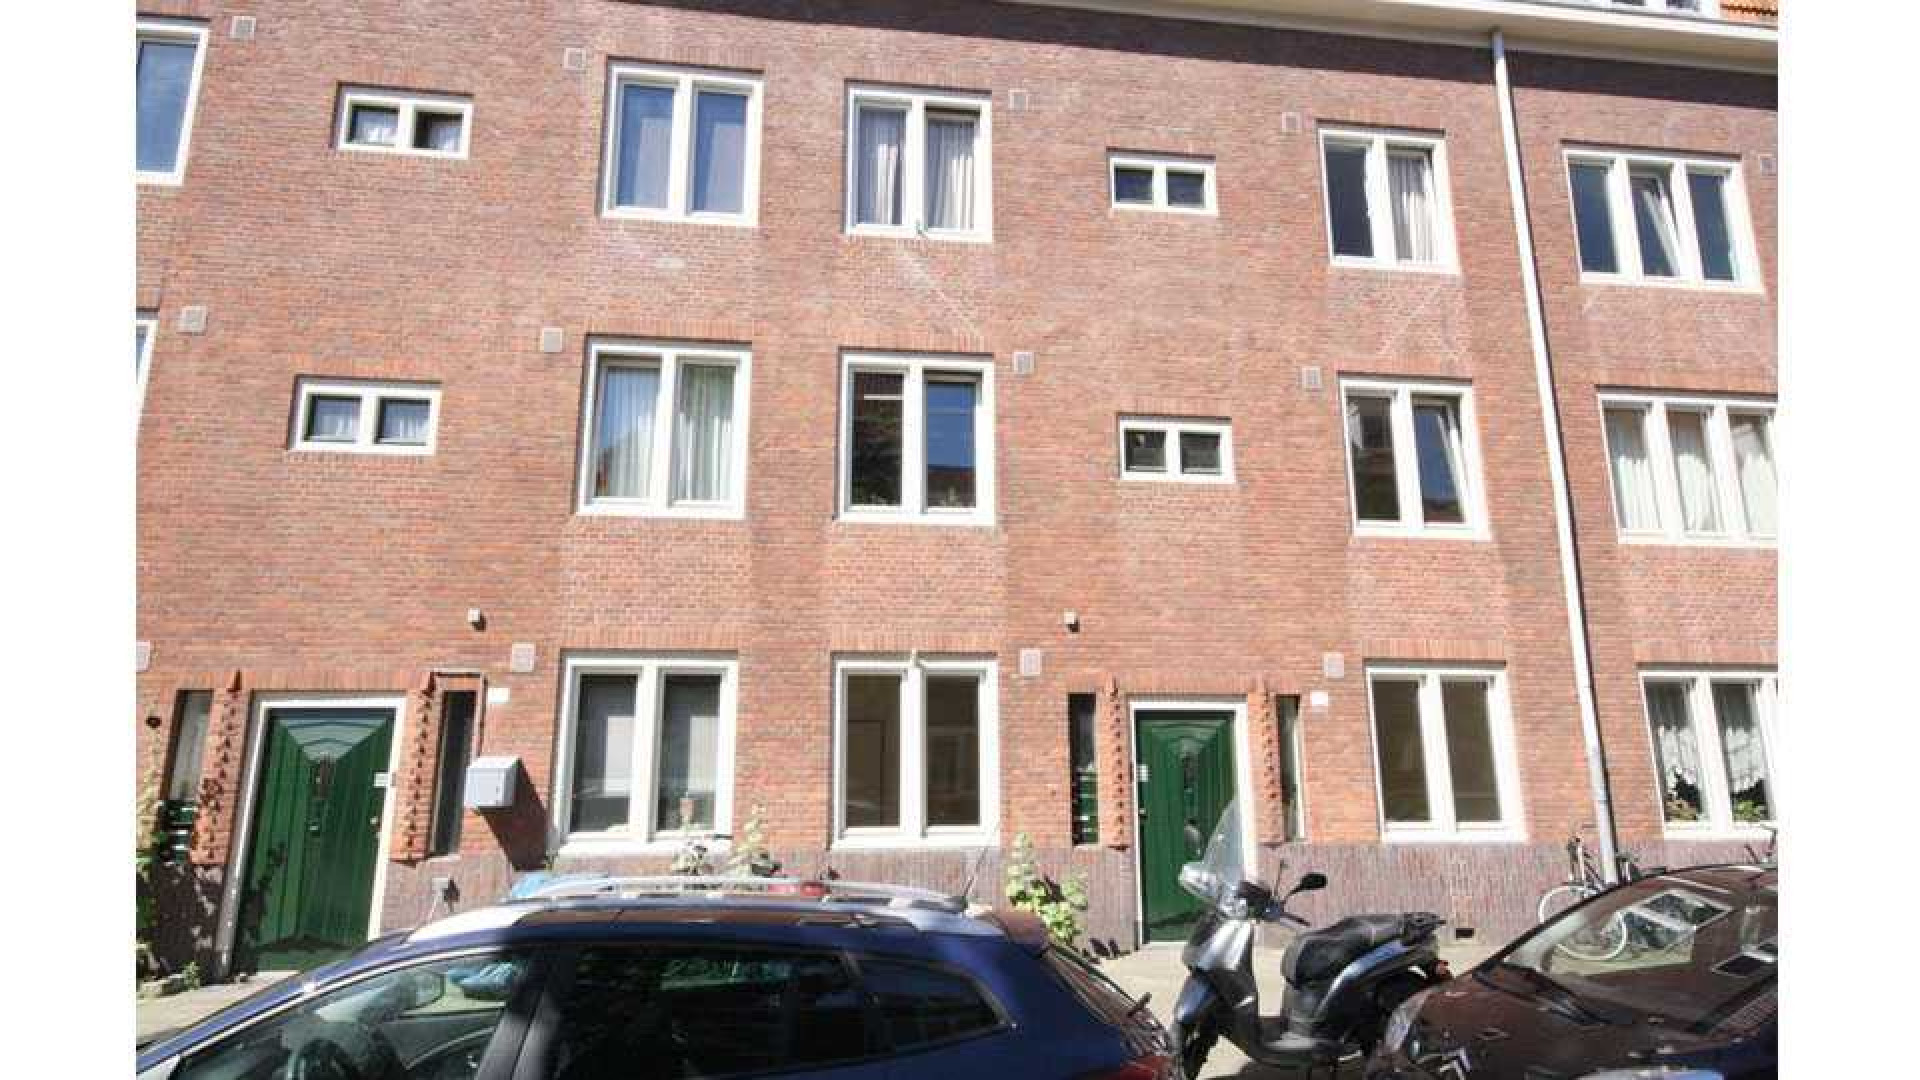 Kluun betaalt dik boven de vraagprijs voor woning in de Amsterdamse 